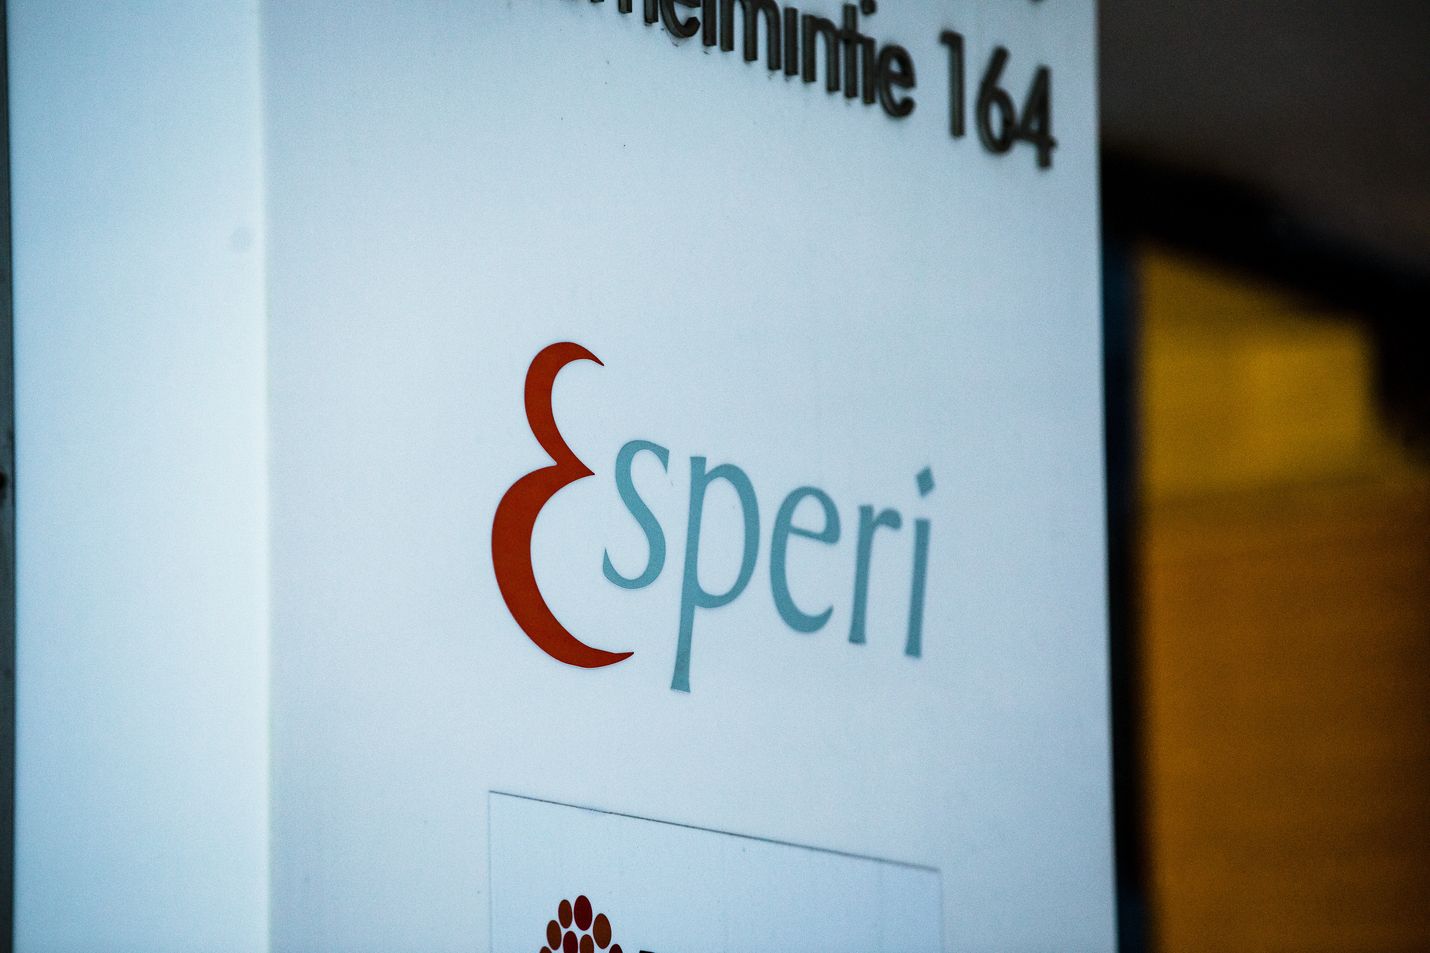 Hoivayhtiö Esperi Care ei maksanut viime vuonna lainkaan yhteisöveroja. 